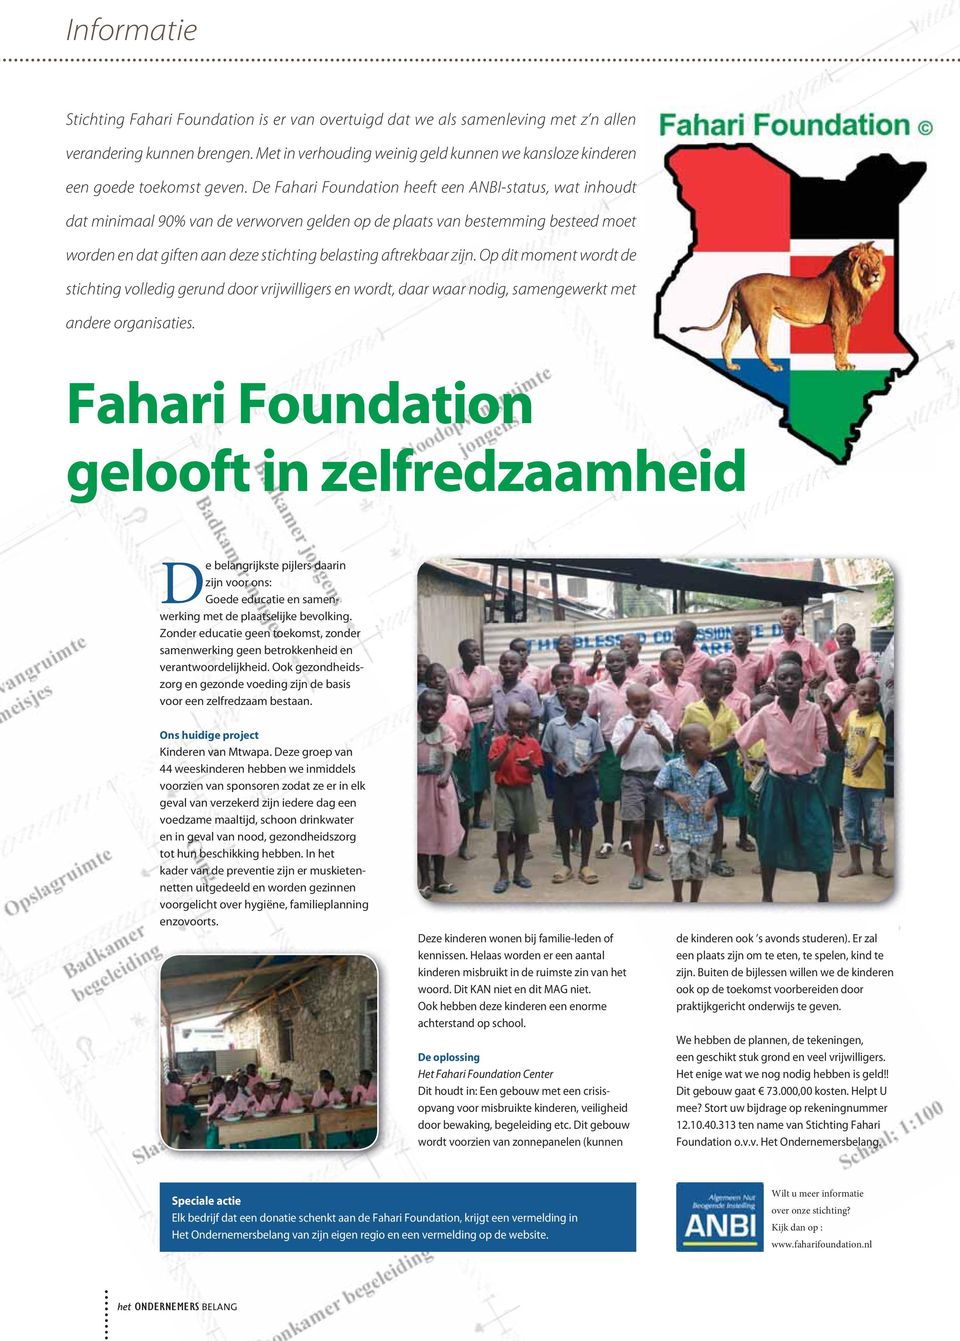 De Fahari Foundation heeft een ANBI-status, wat inhoudt dat minimaal 90% van de verworven gelden op de plaats van bestemming besteed moet worden en dat giften aan deze stichting belasting aftrekbaar